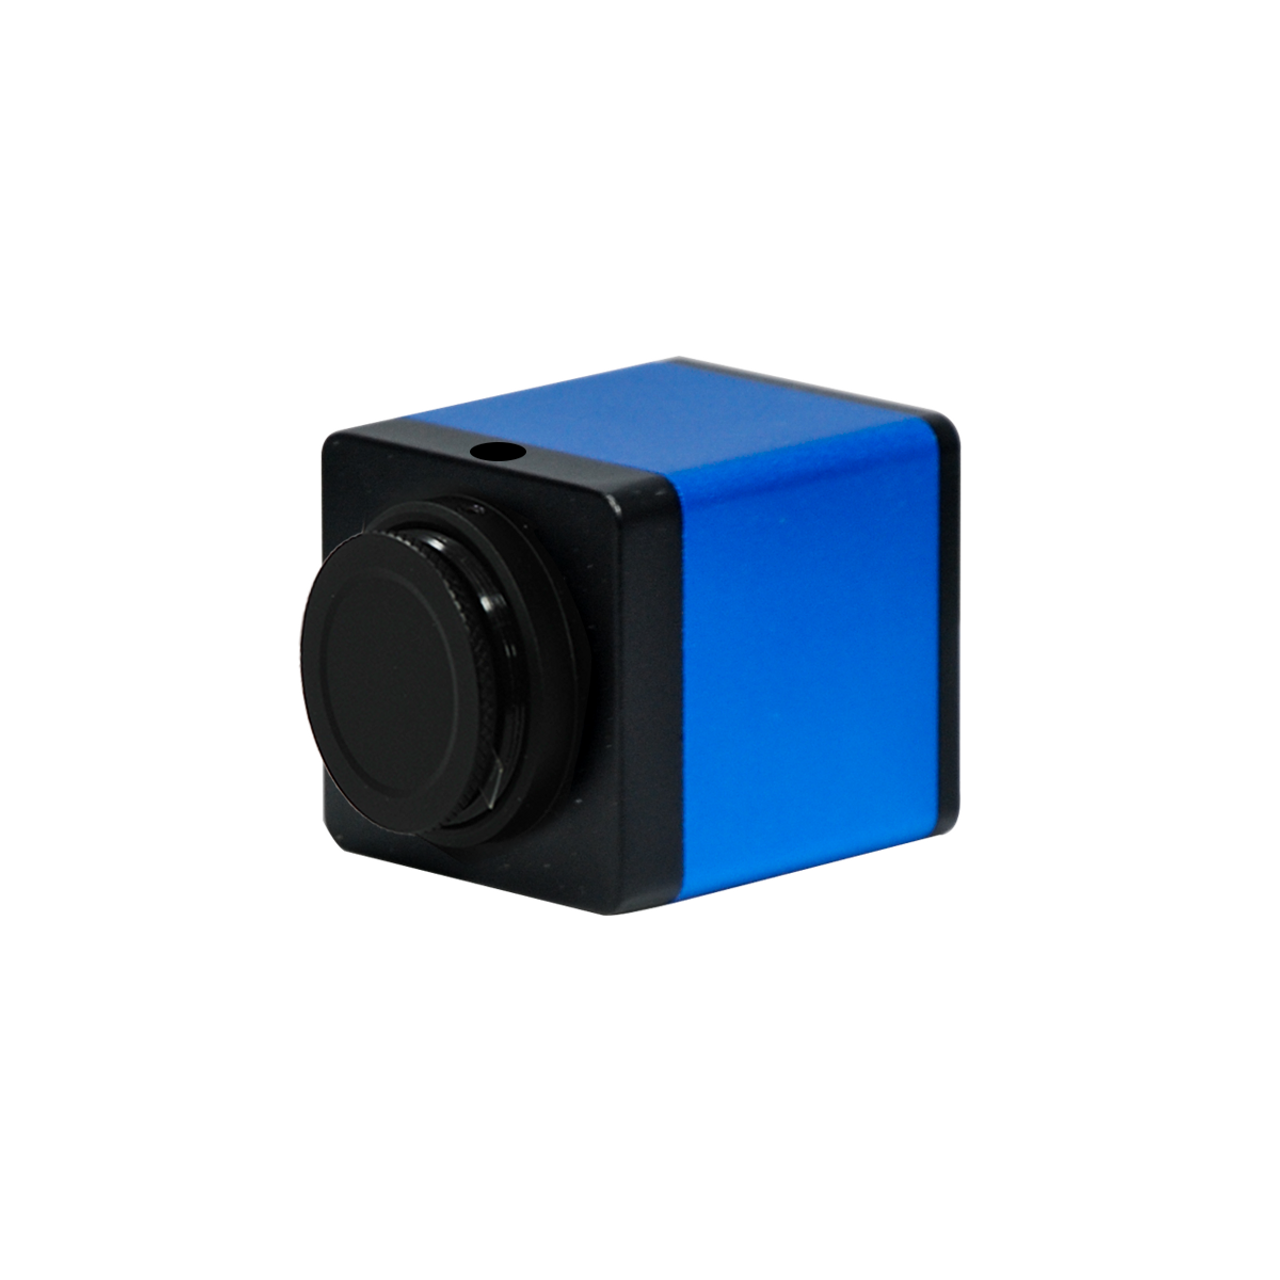 Mini HDMI to VGA Adapter Converter for Digital Still Camera / Video Camera  - 1920x1080